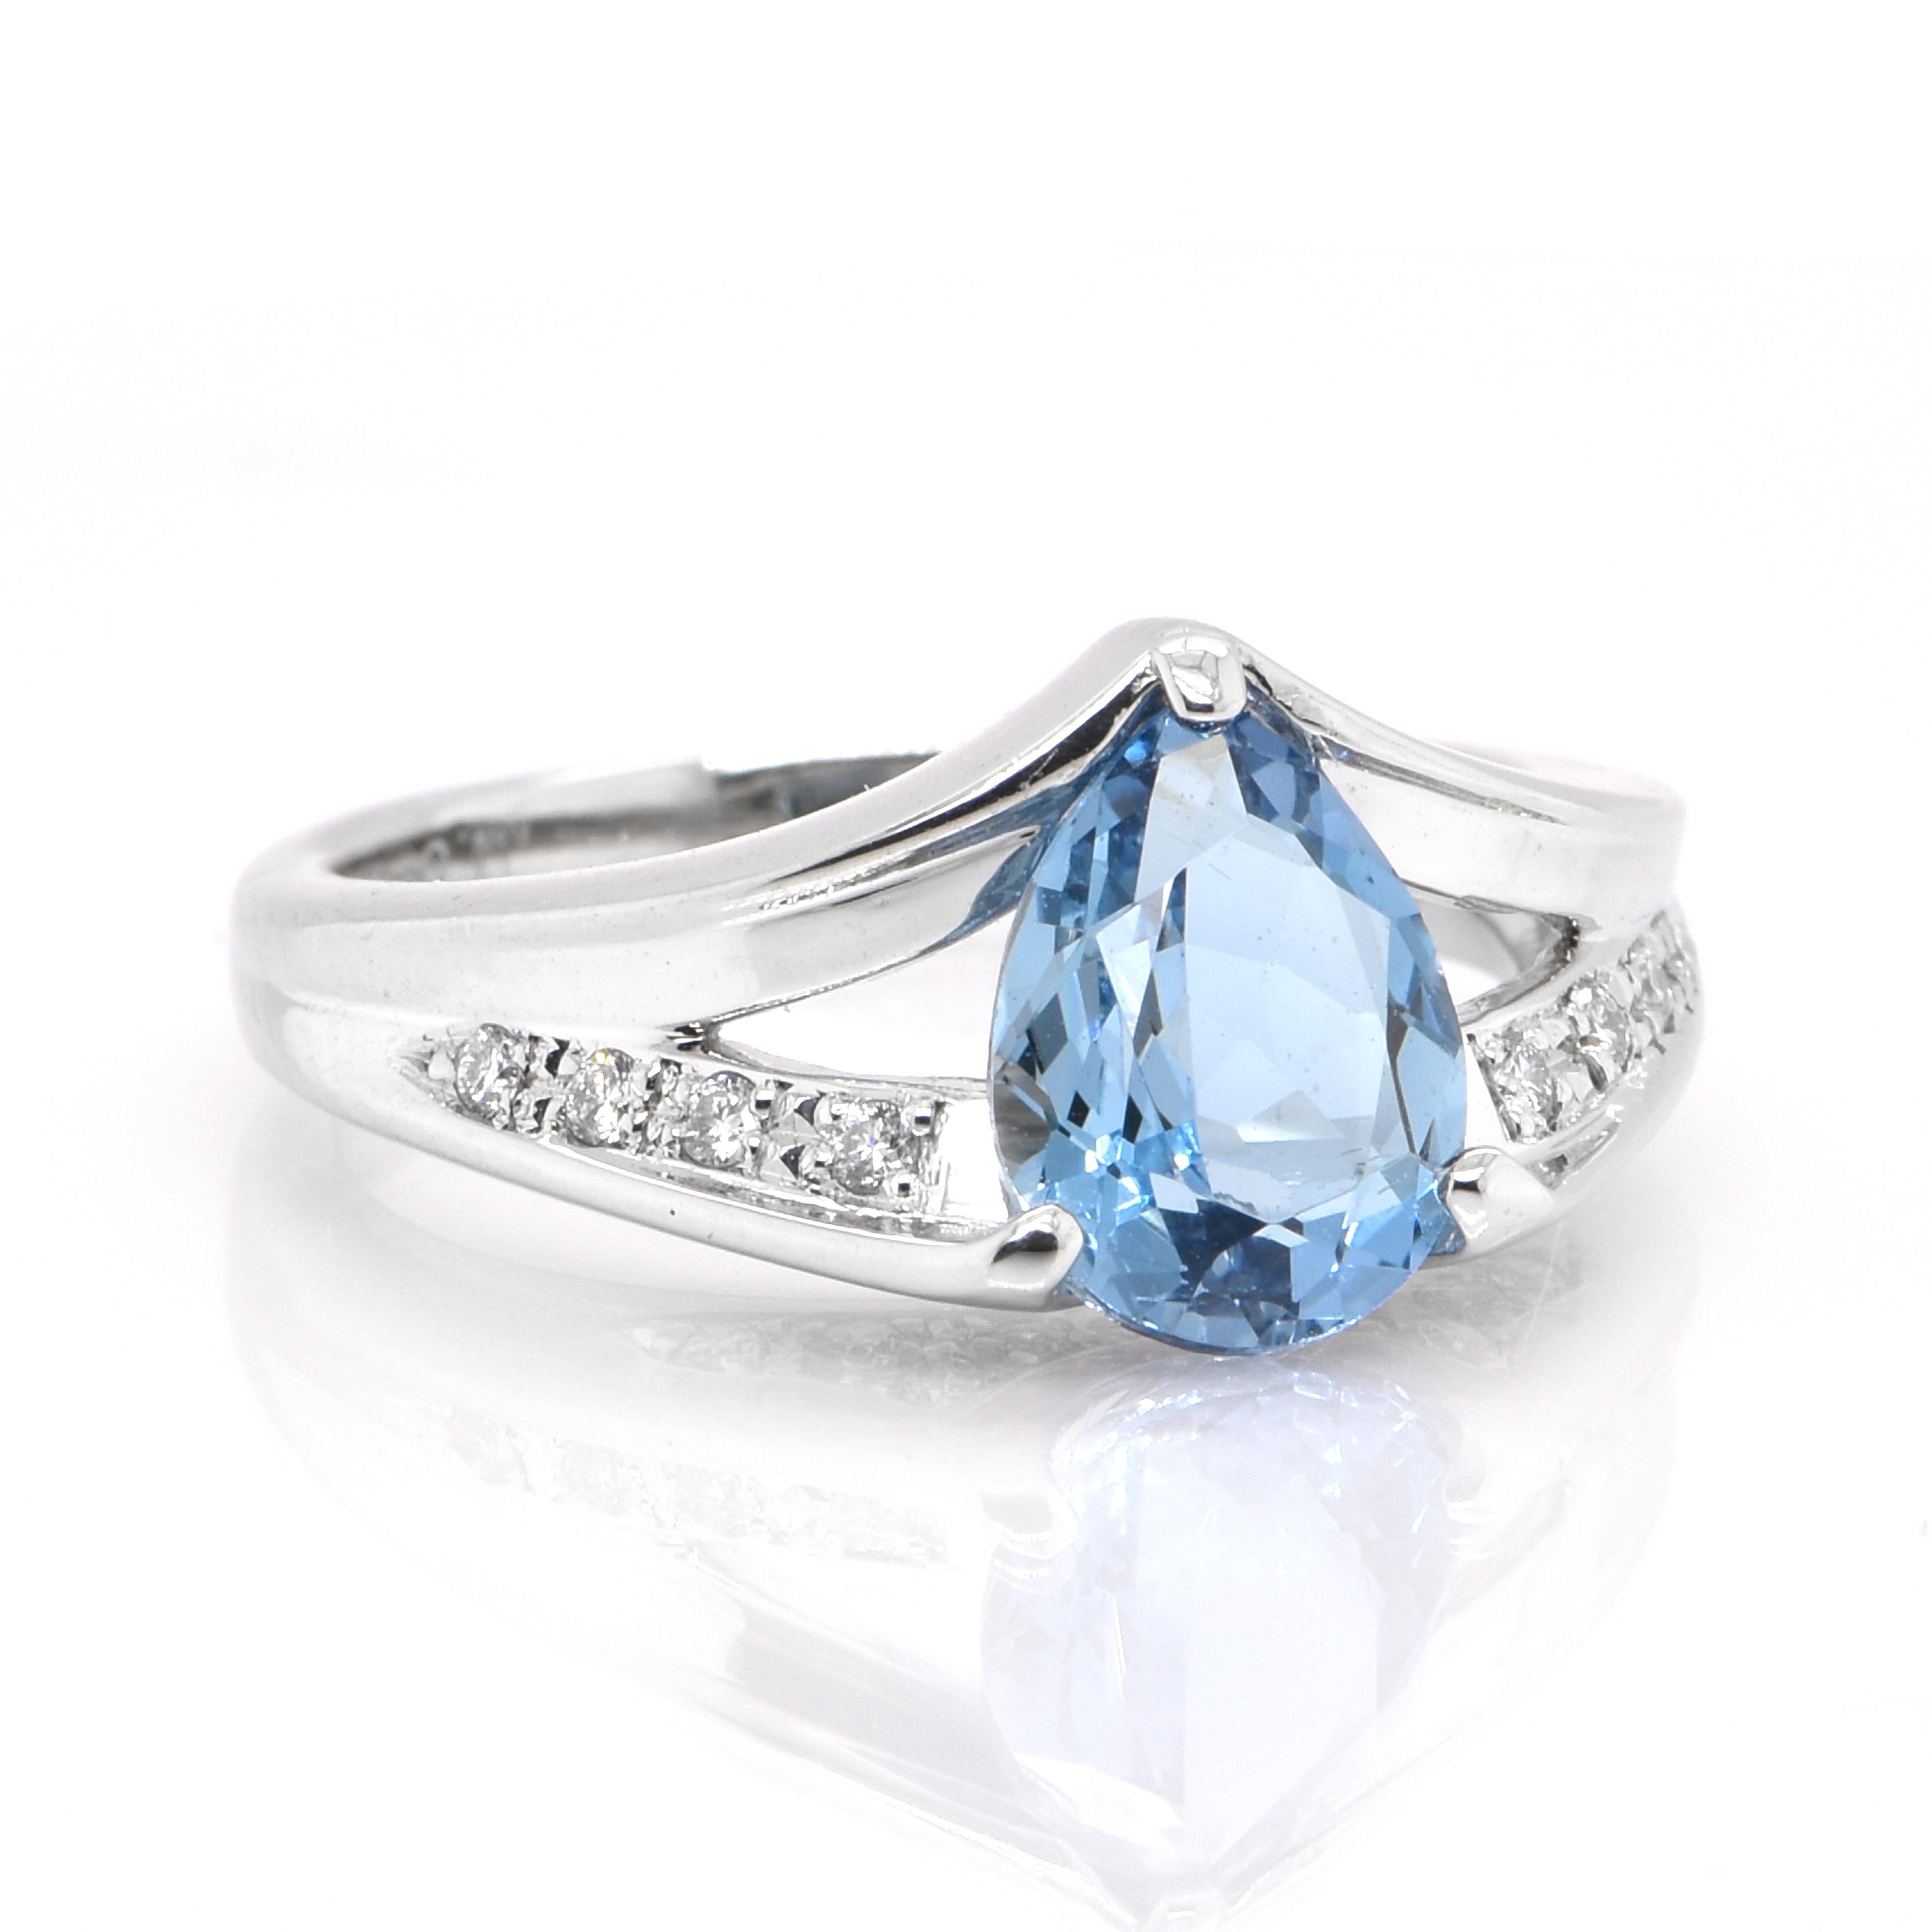 25 carat aquamarine ring